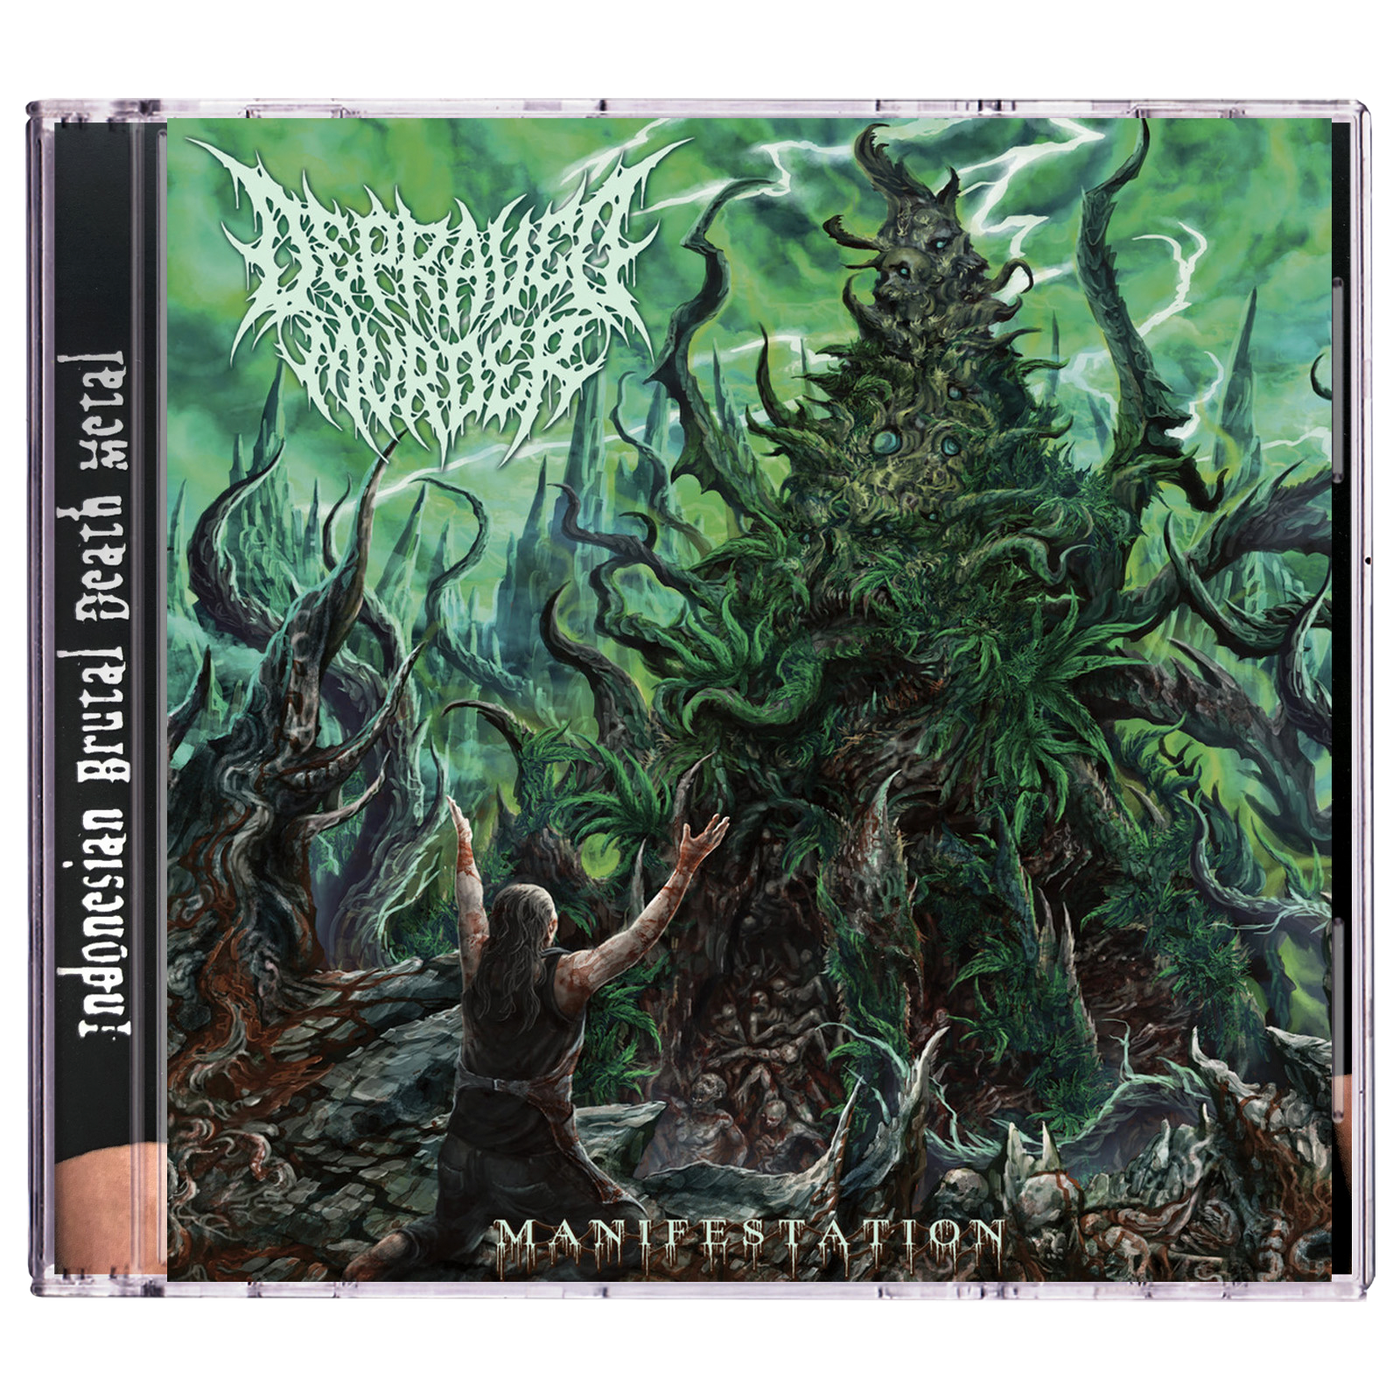 Depraved Murder 'Manifestation' CD